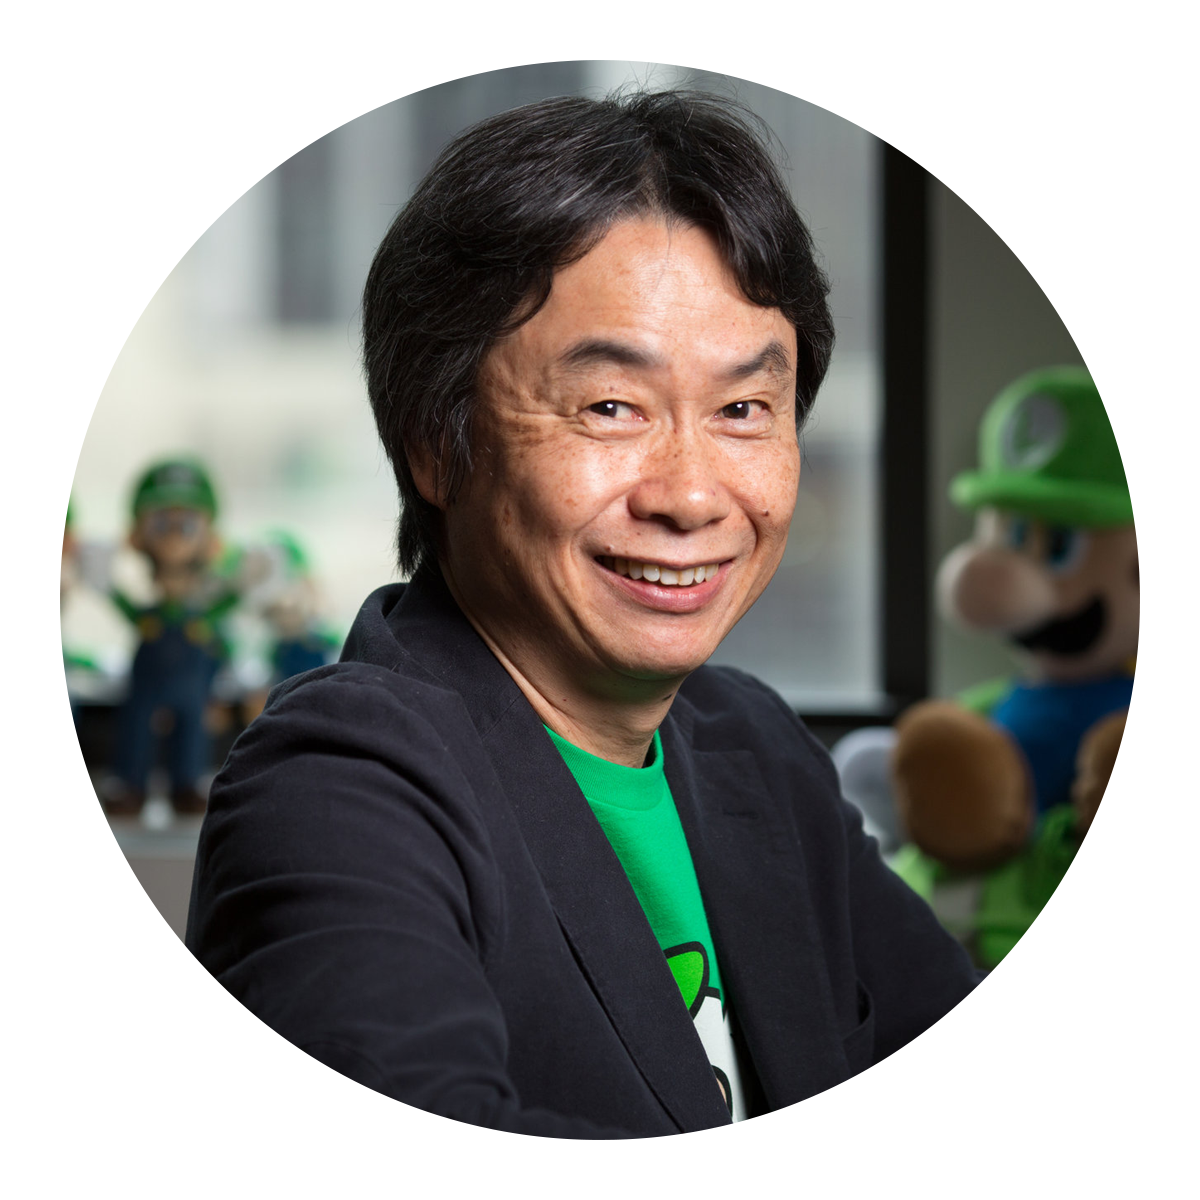 Shigeru Miyamoto Facts for Kids